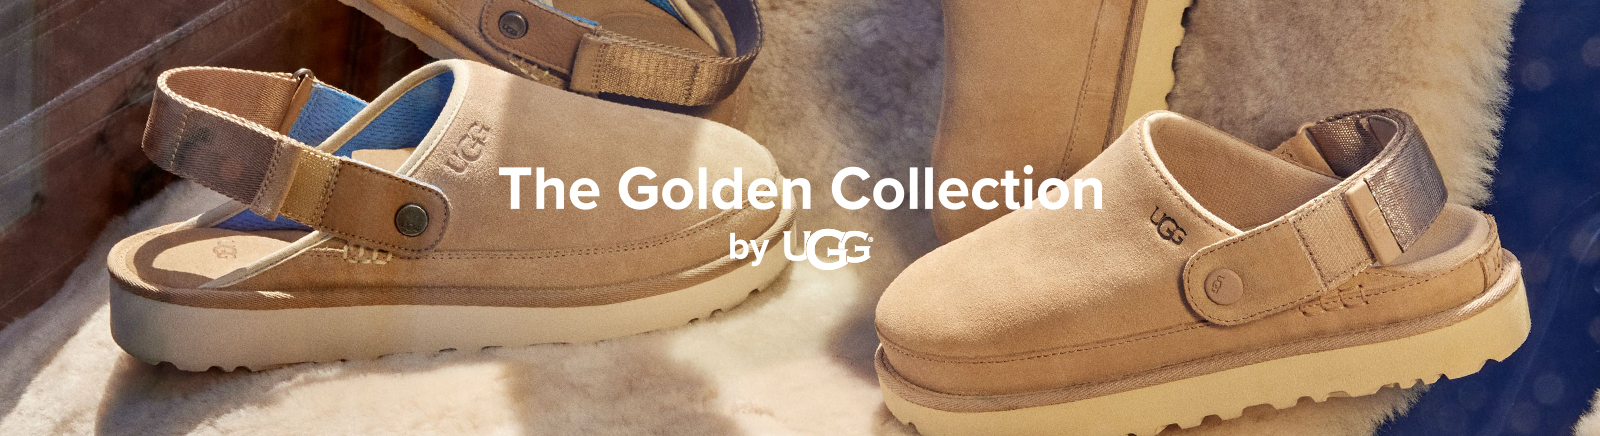 UGG Markenschuhe online entdecken im Juppen Schuhe Shop